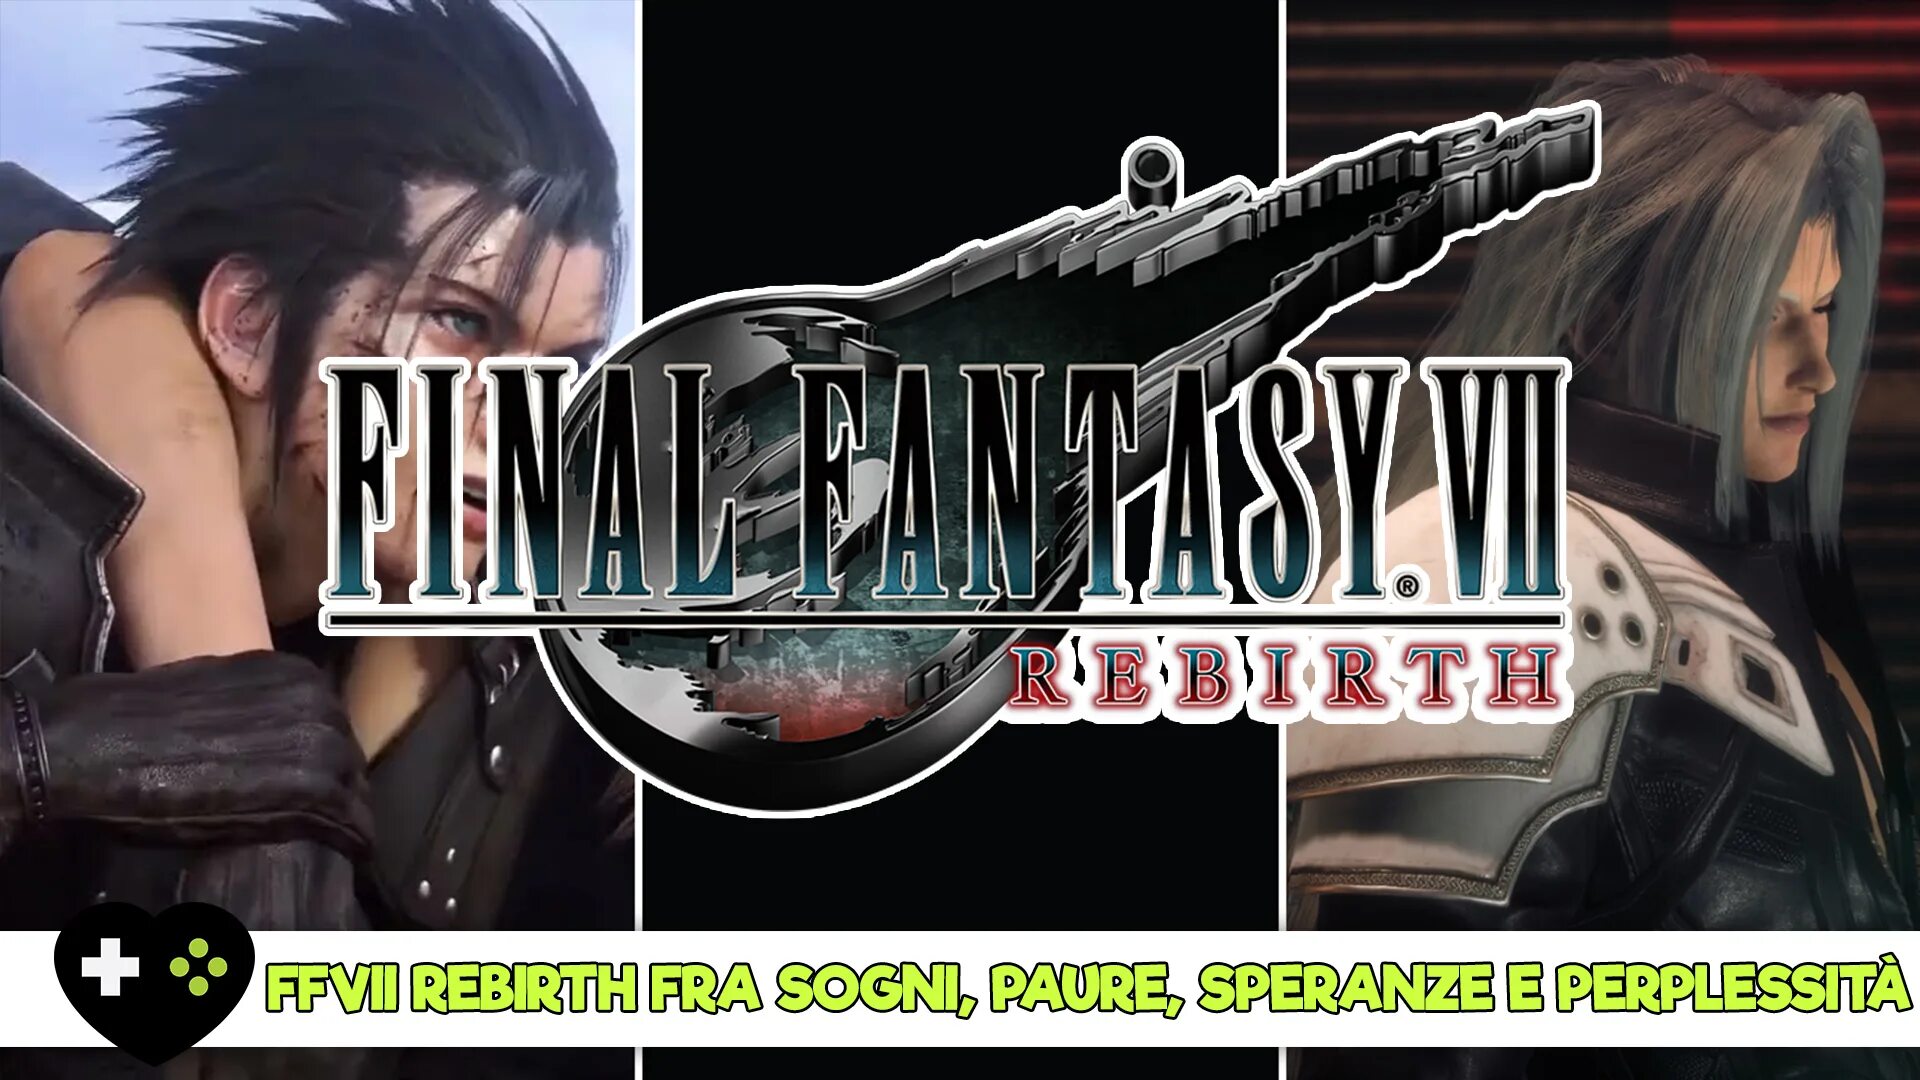 Final fantasy 7 rebirth pc. Final Fantasy 7 Rebirth. Final Fantasy 7 Rebirth Дата выхода. Превью Final Fantasy VII Rebirth. Final Fantasy VII Rebirth Скриншоты.